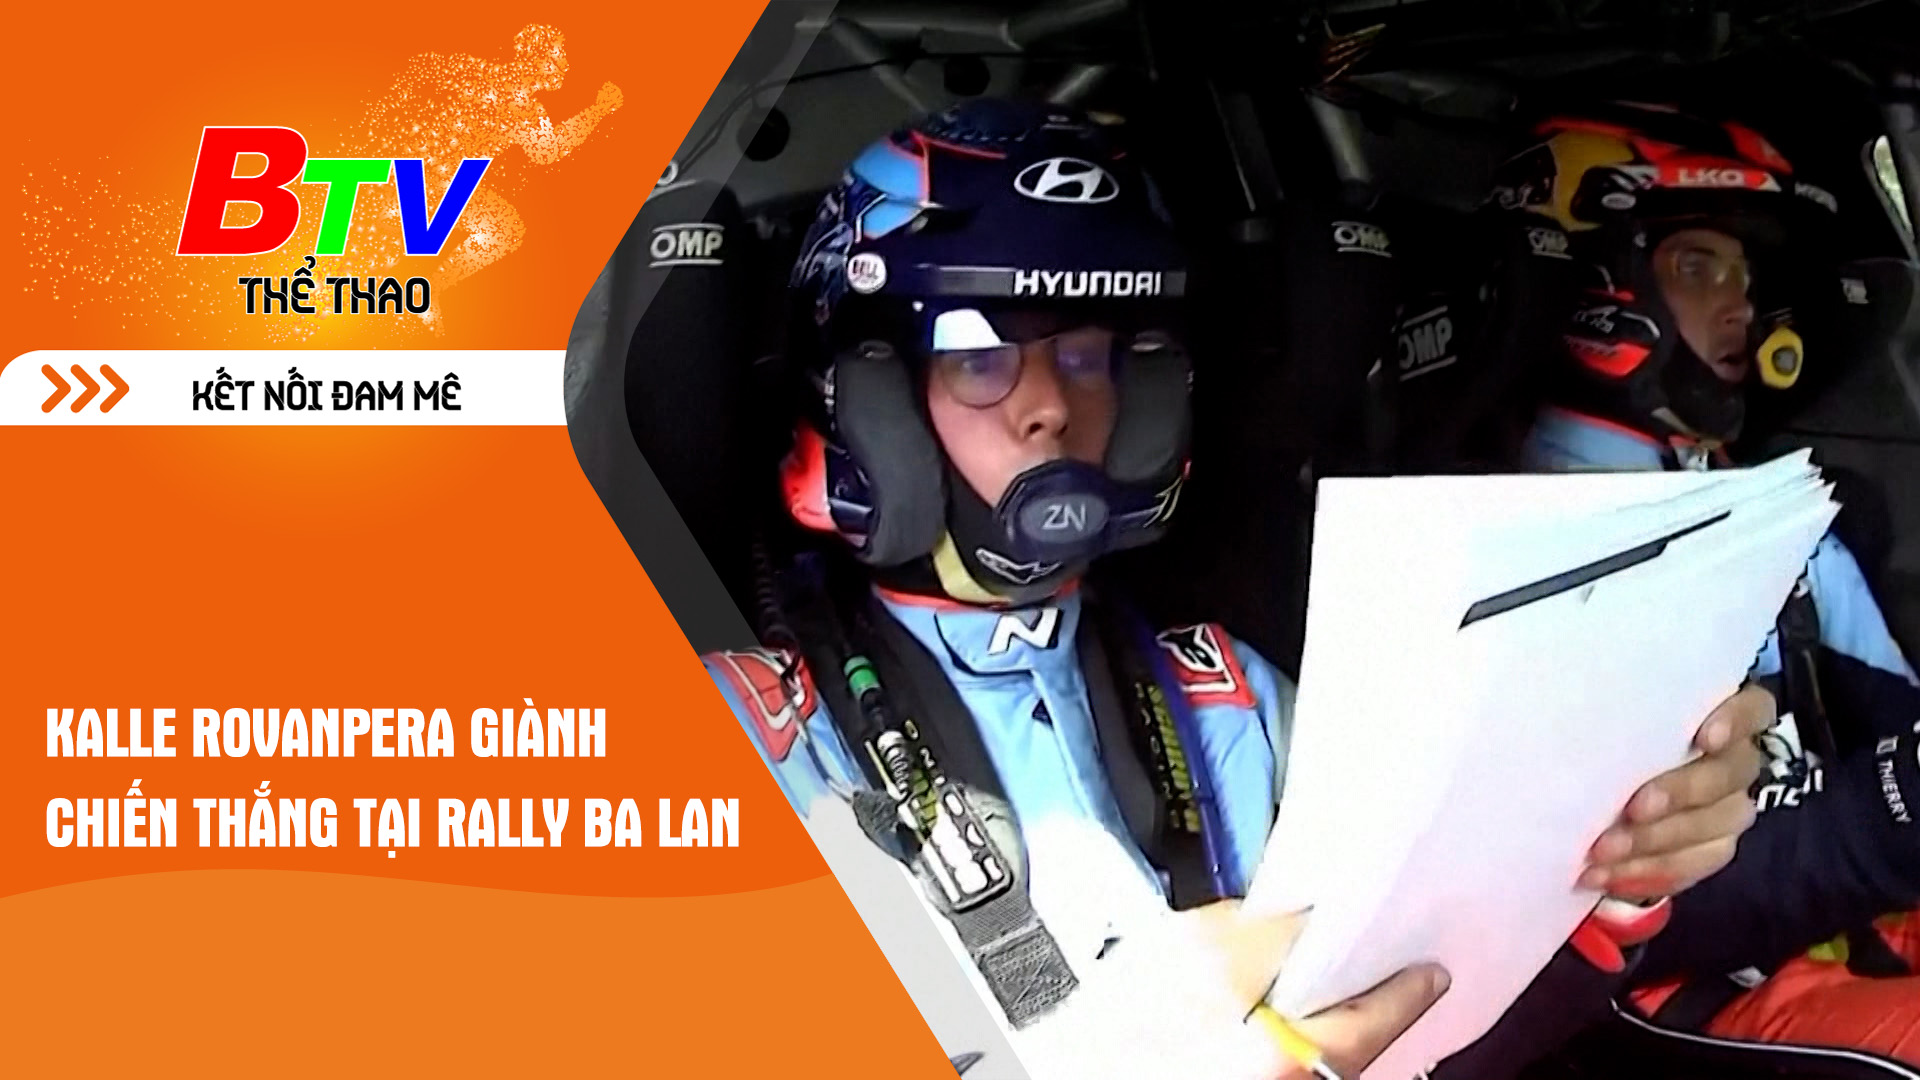 Kalle Rovanpera giành chiến thắng tại Rally Ba Lan | Tin Thể thao 24h